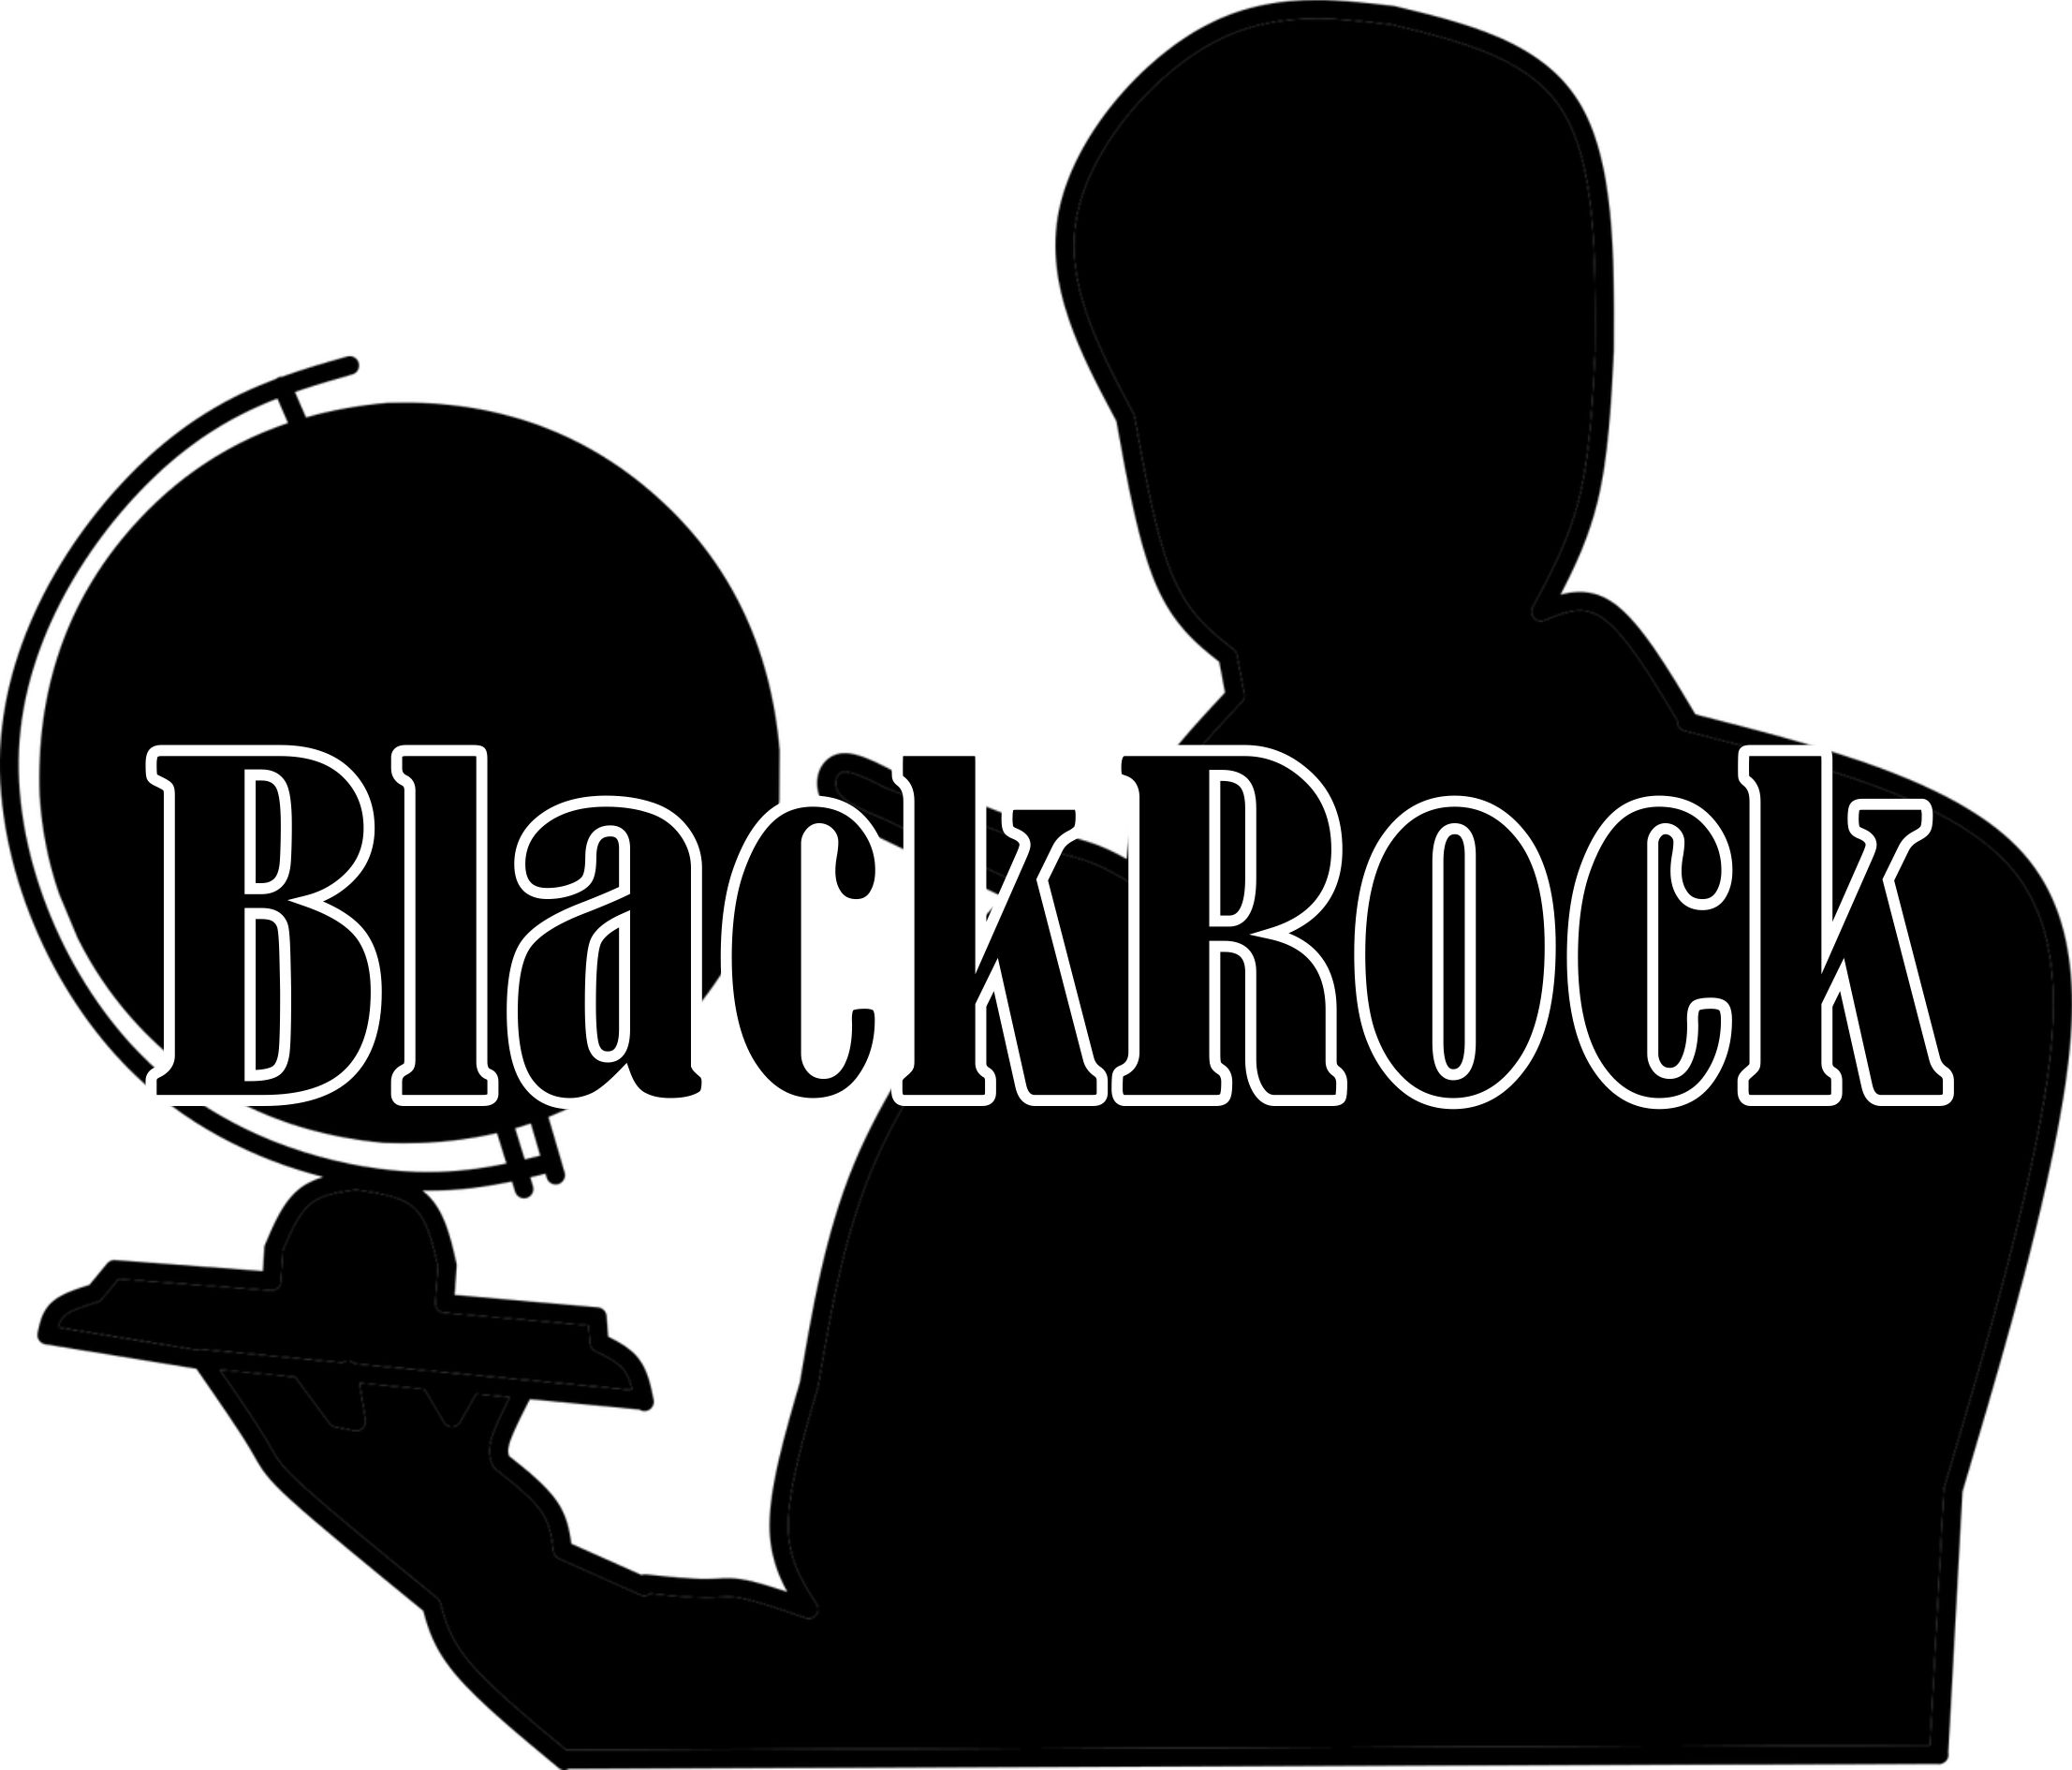 BlackRock am Weg zur Weltherrschaft